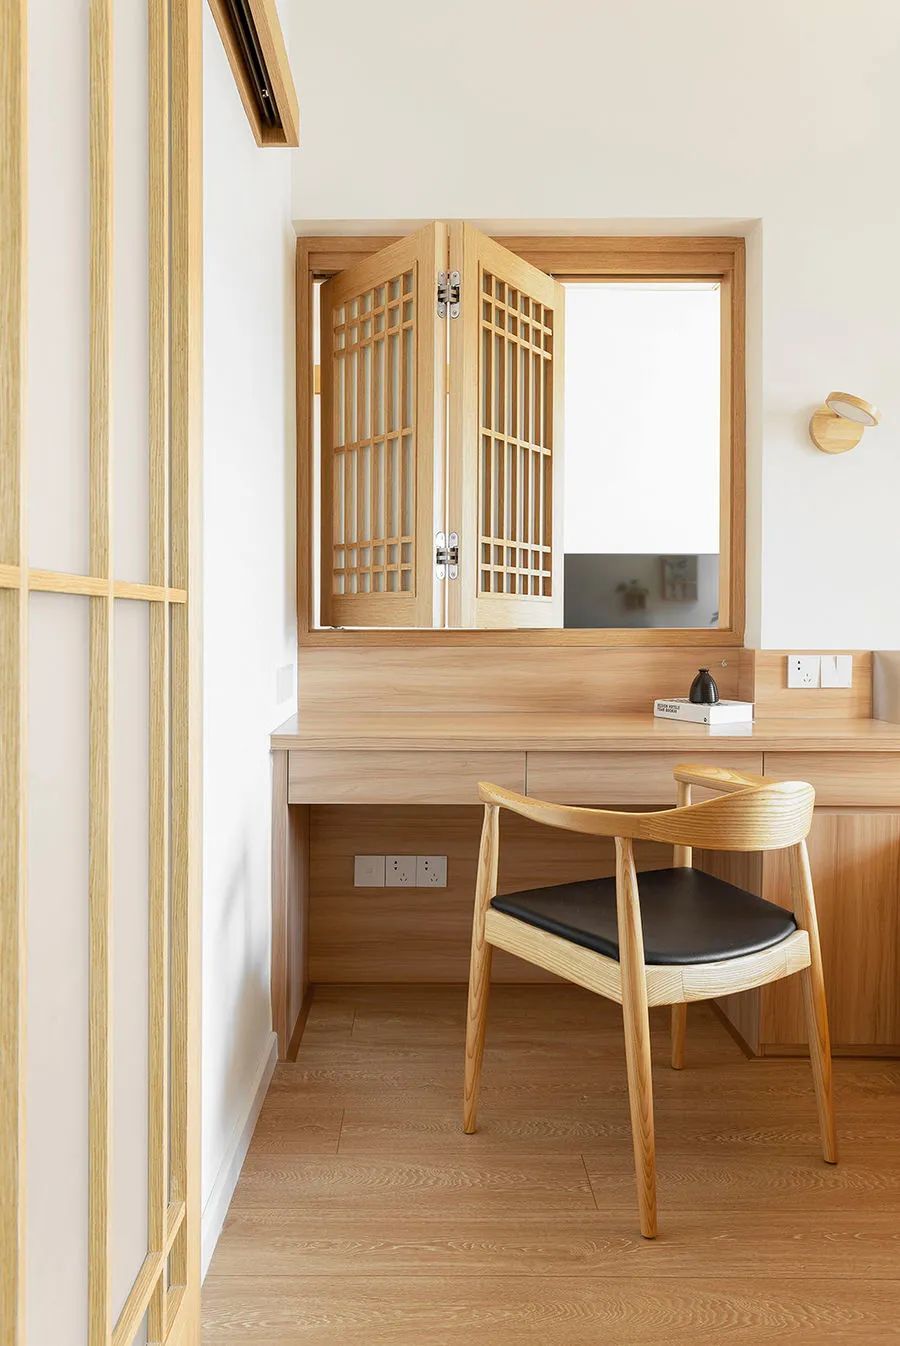 Cải tạo theo phong cách Nhật Bản, căn hộ 73 m2 lột xác trở nên tiện nghi đến ngỡ ngàng - Ảnh 13.